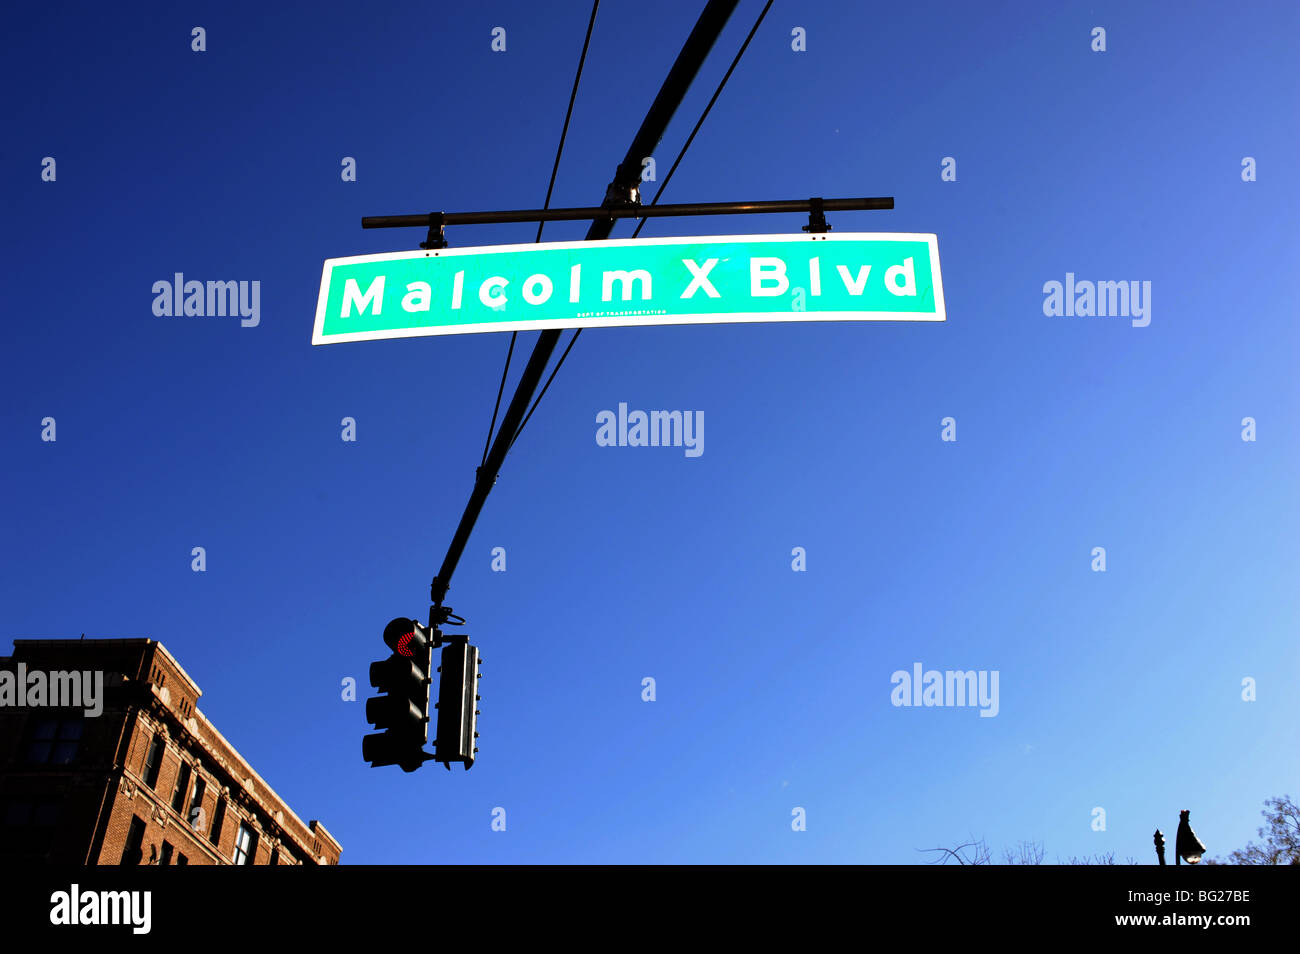 Malcolm X Blvd ( Boulevard ), situado sobre la calle en Harlem Nueva York, EE.UU. - foto por Simon Dack Foto de stock